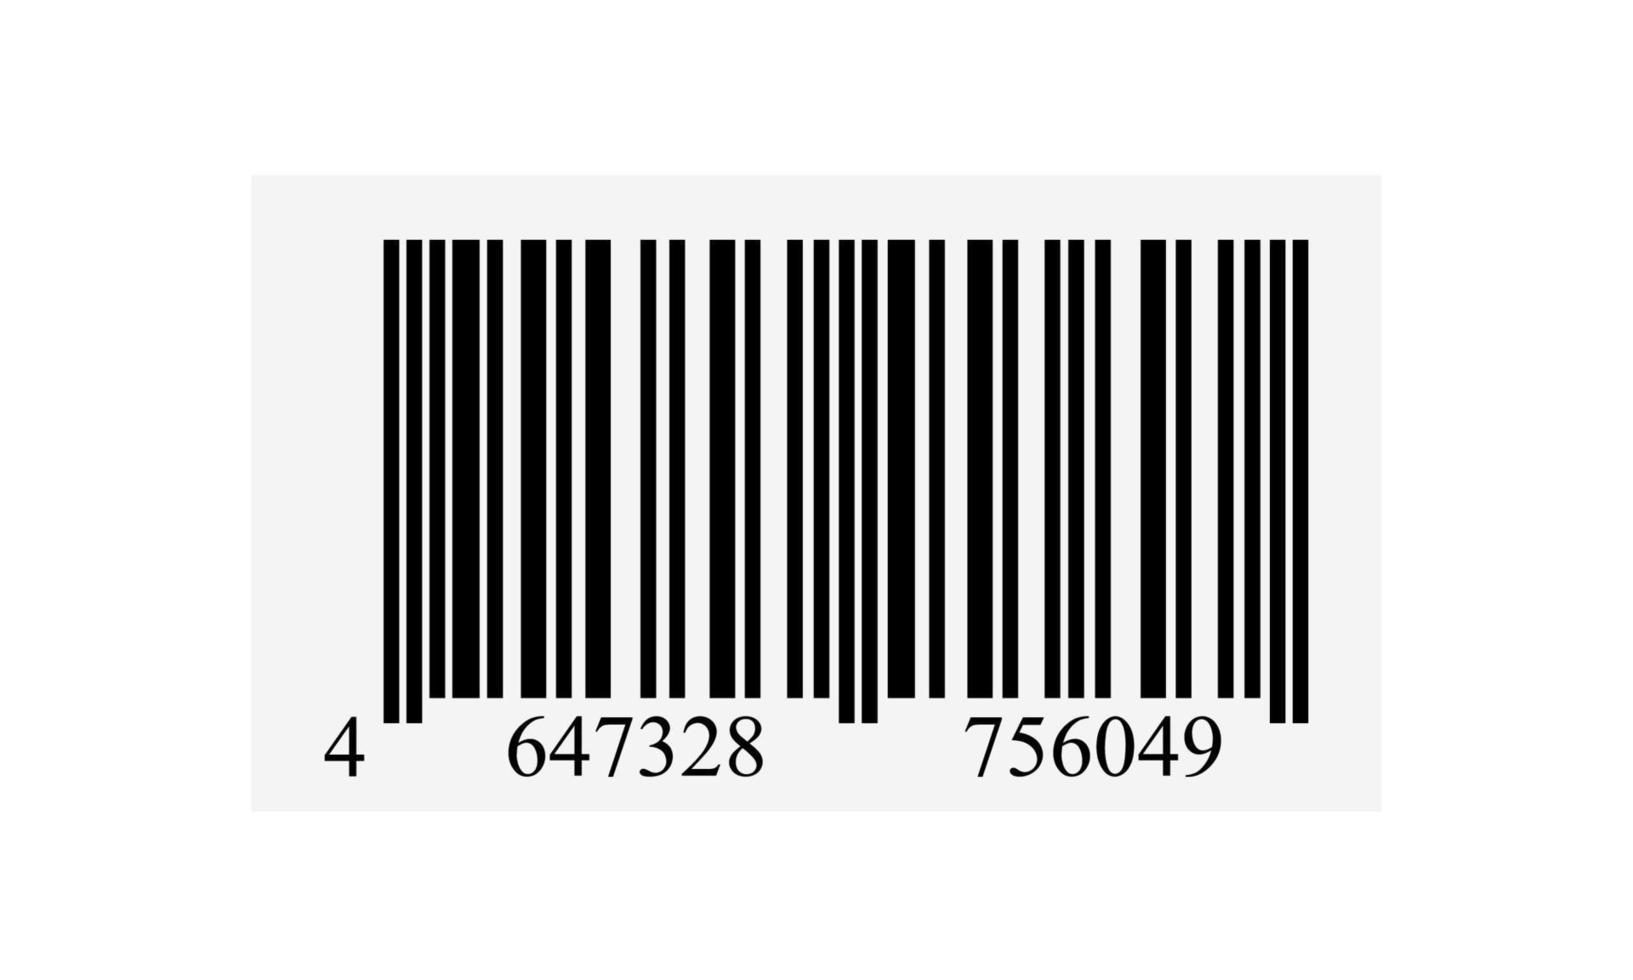 Beispiel-Barcode auf weißem Hintergrund. vektor